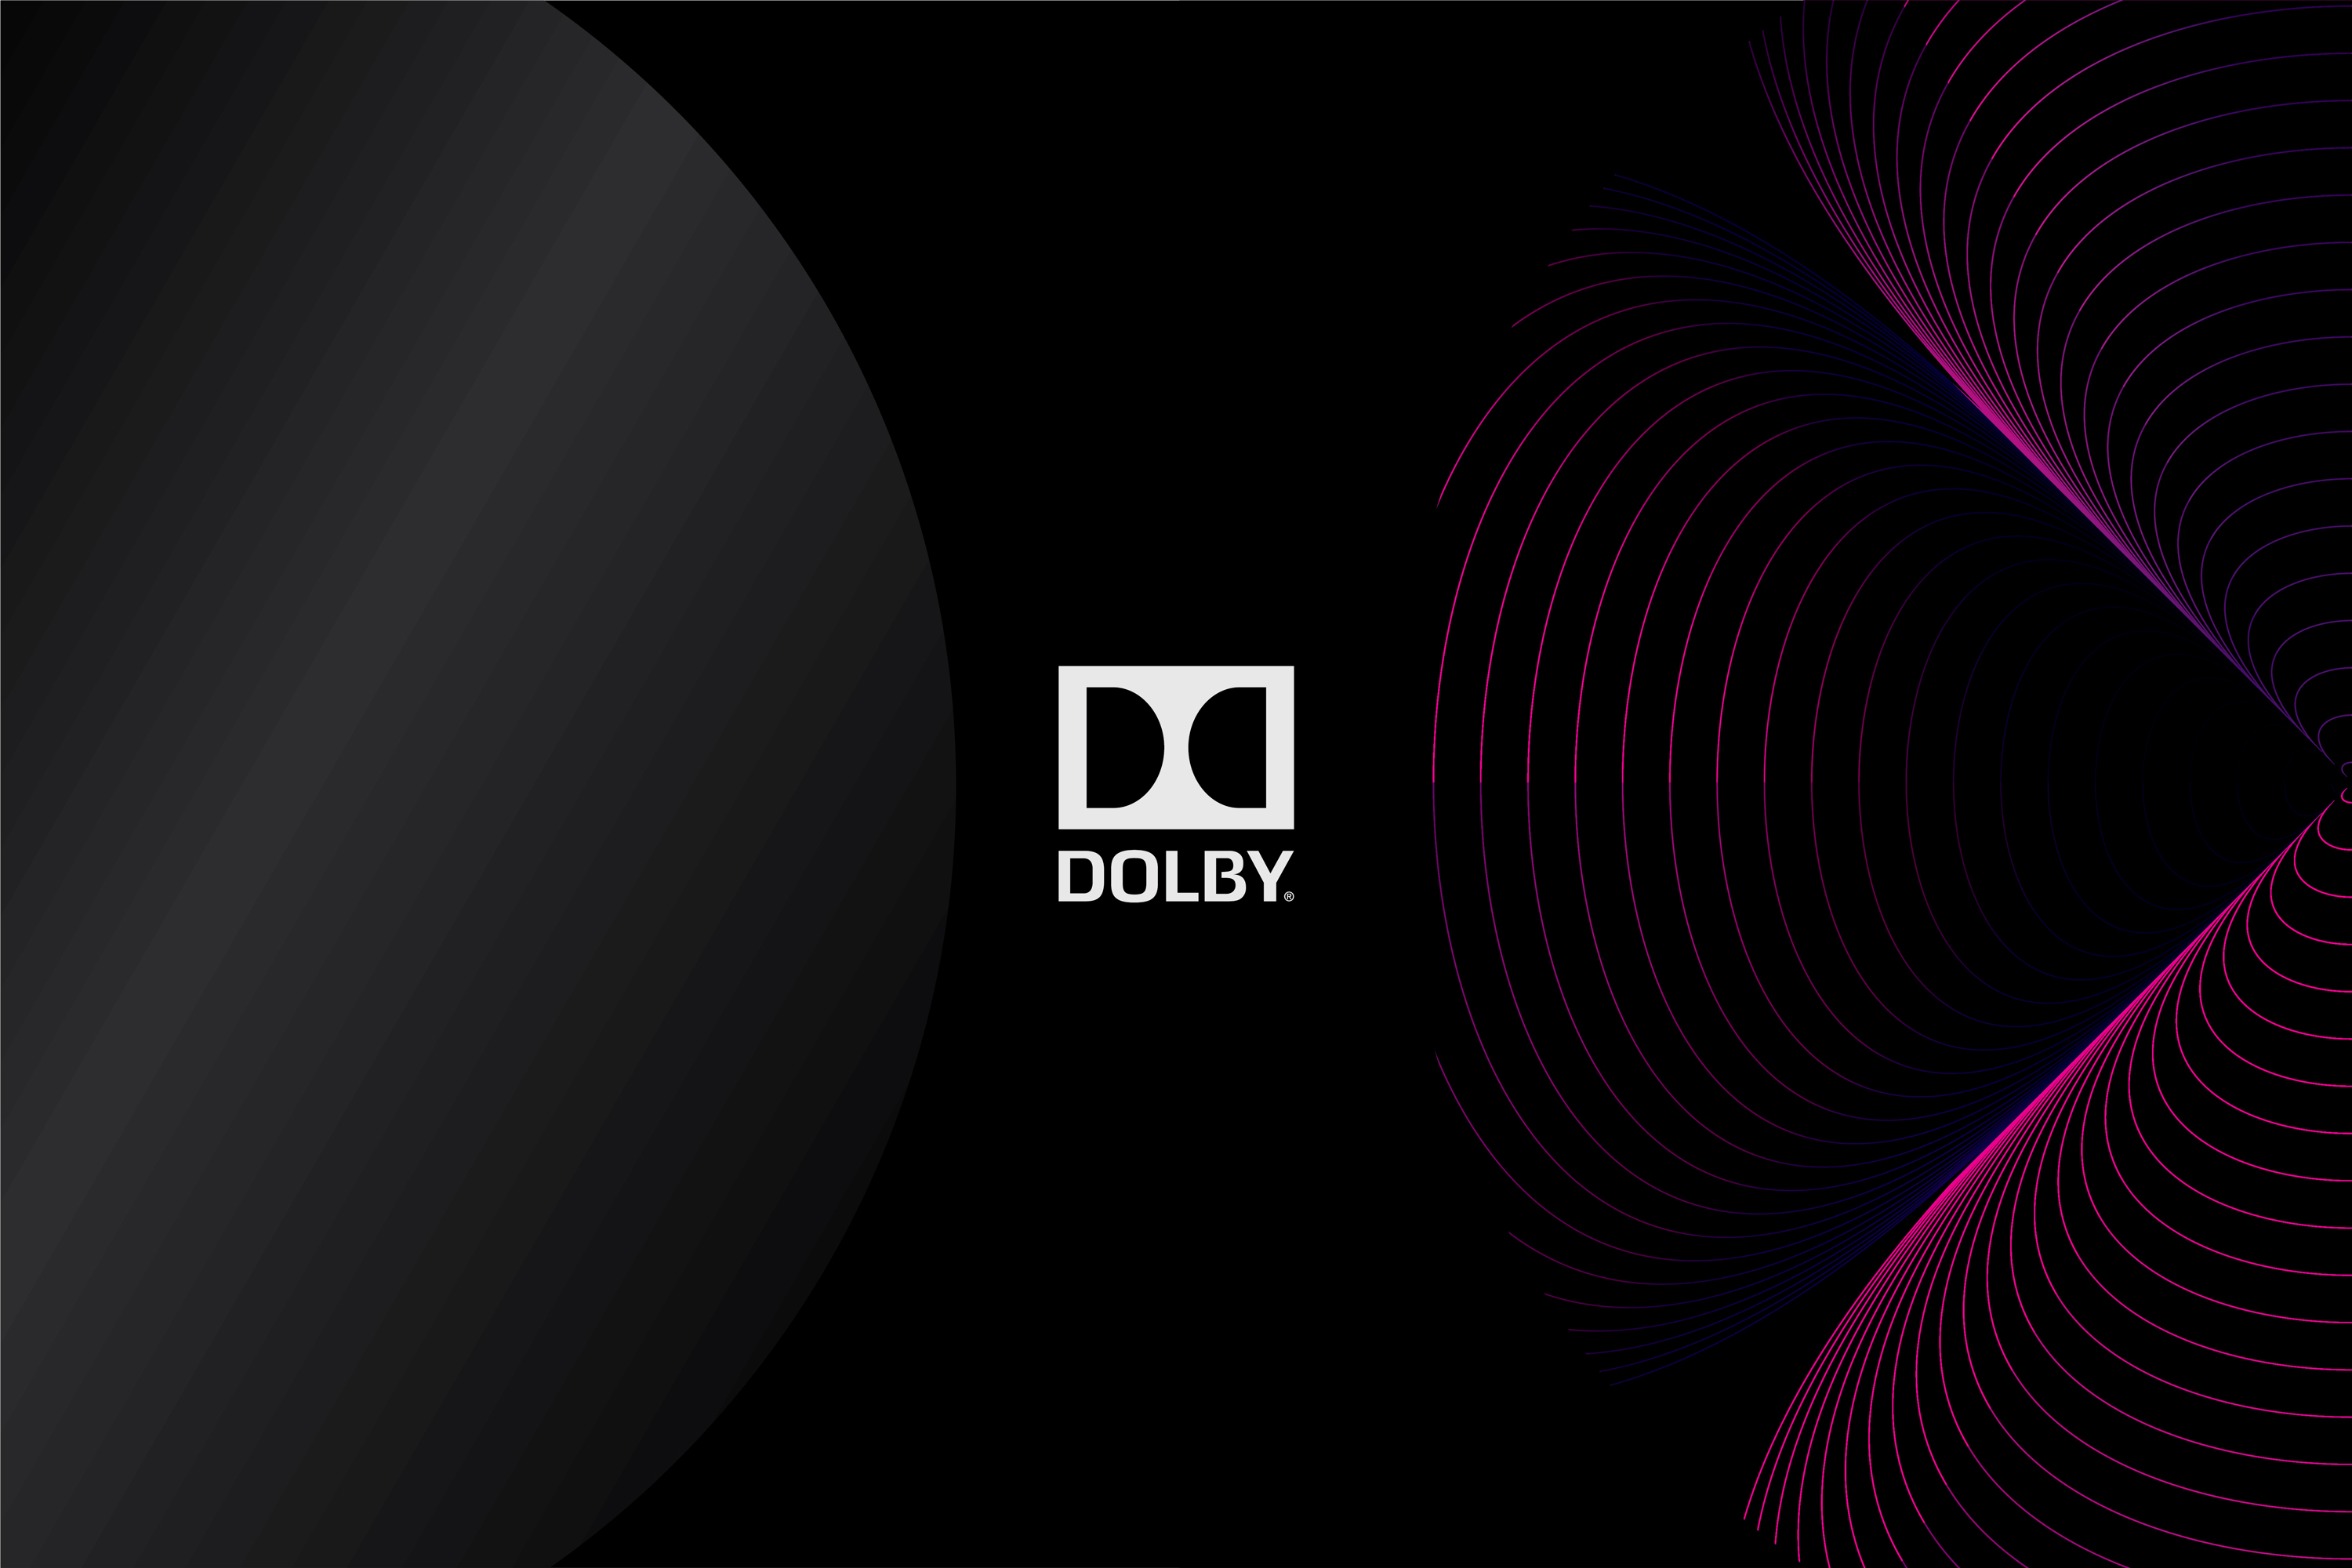 Dolby_Atmos_Double_D.jpg